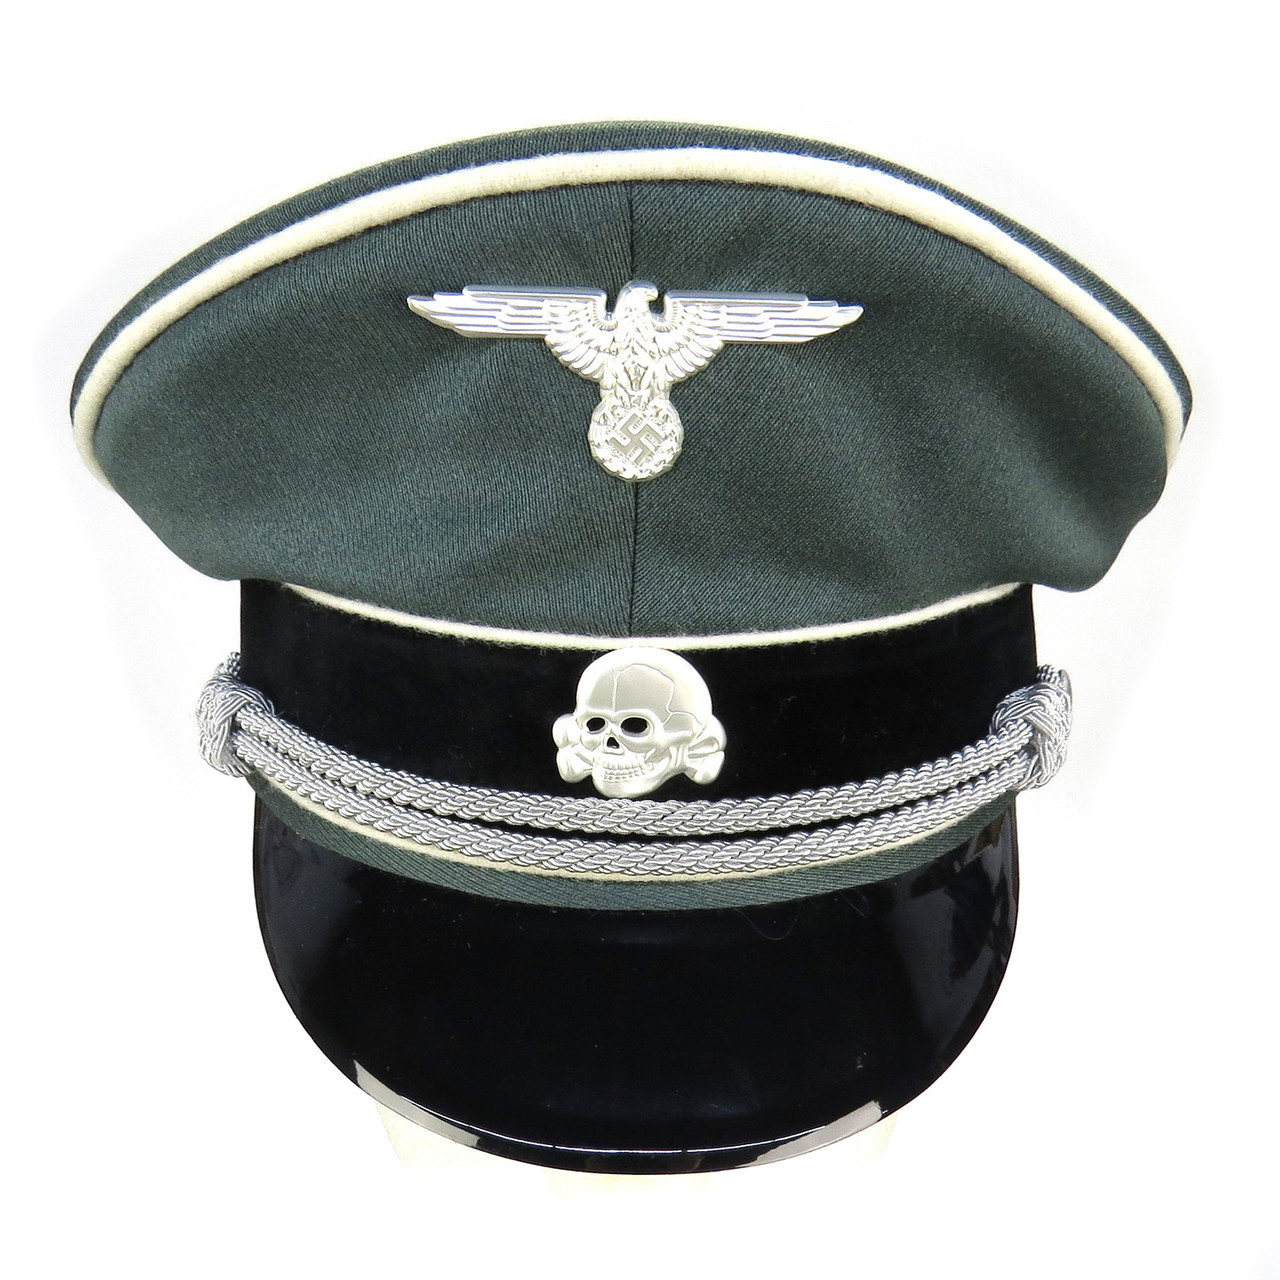 Waffen SS Officer Visor Cap (Erel) - Size 60